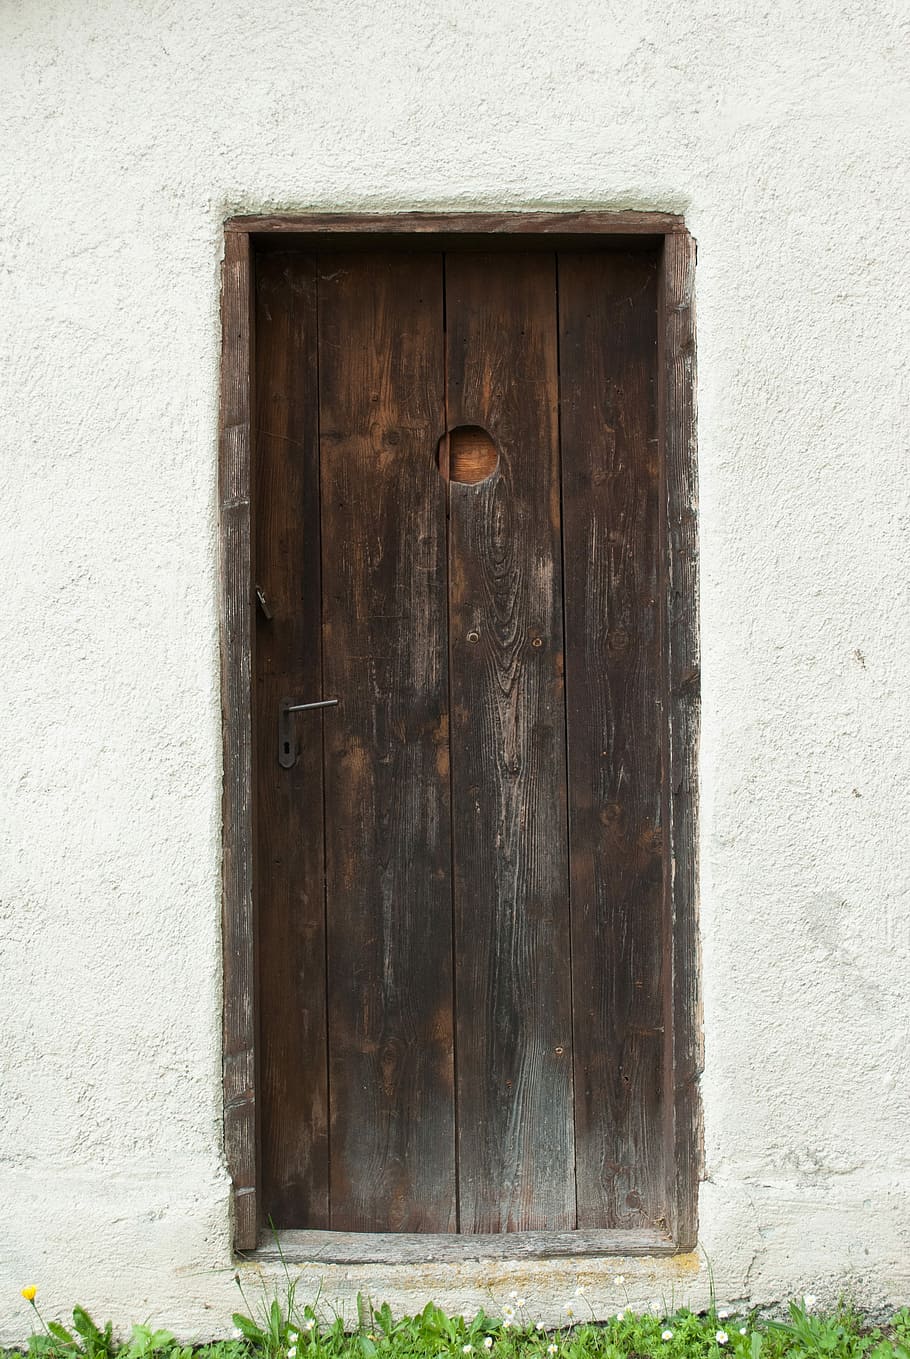 Door, Input, Wood, wooden door, shabby, old, rustic, stone wall, passage, architecture